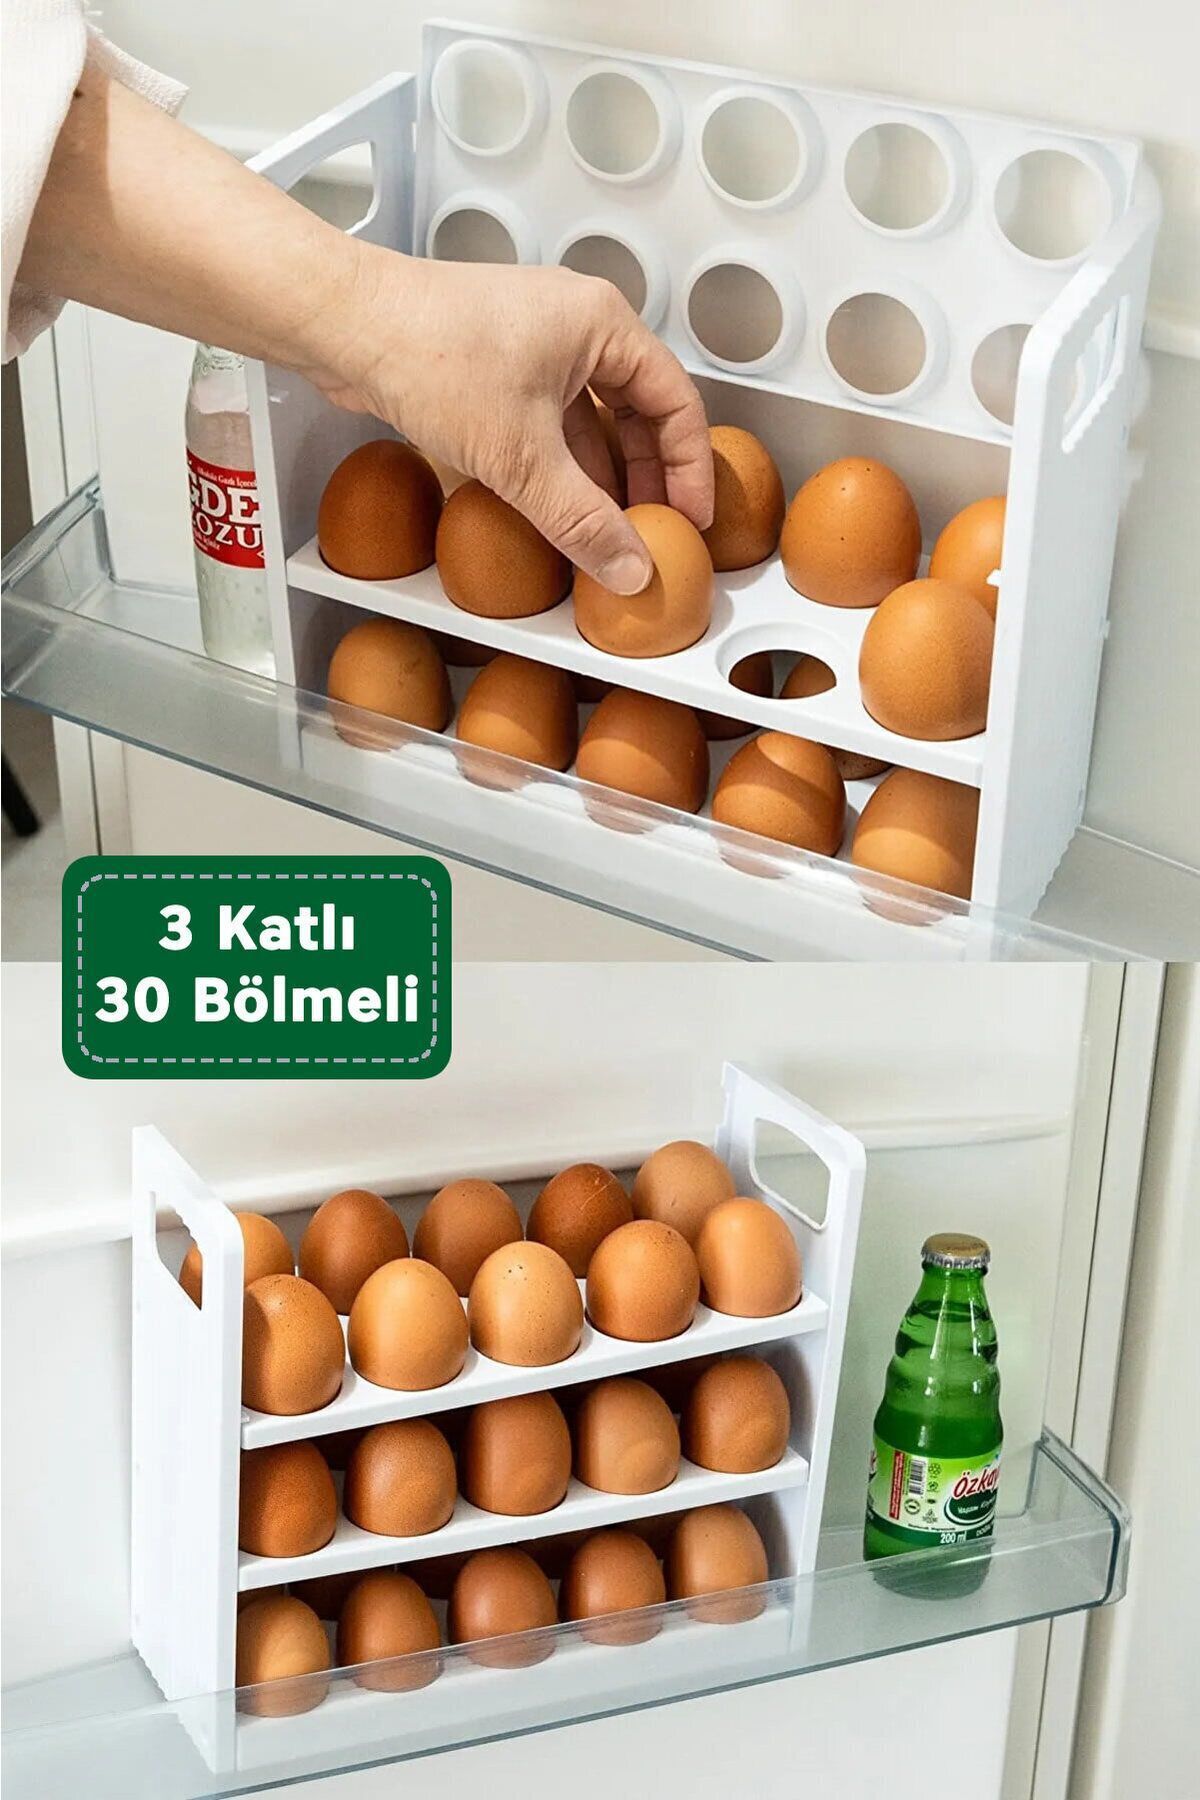 ARVALE 30 Bölmeli Yumurta Kutusu 3 Katlı Yumurtalık Buzdolabı Organizeri Saklama Kabı